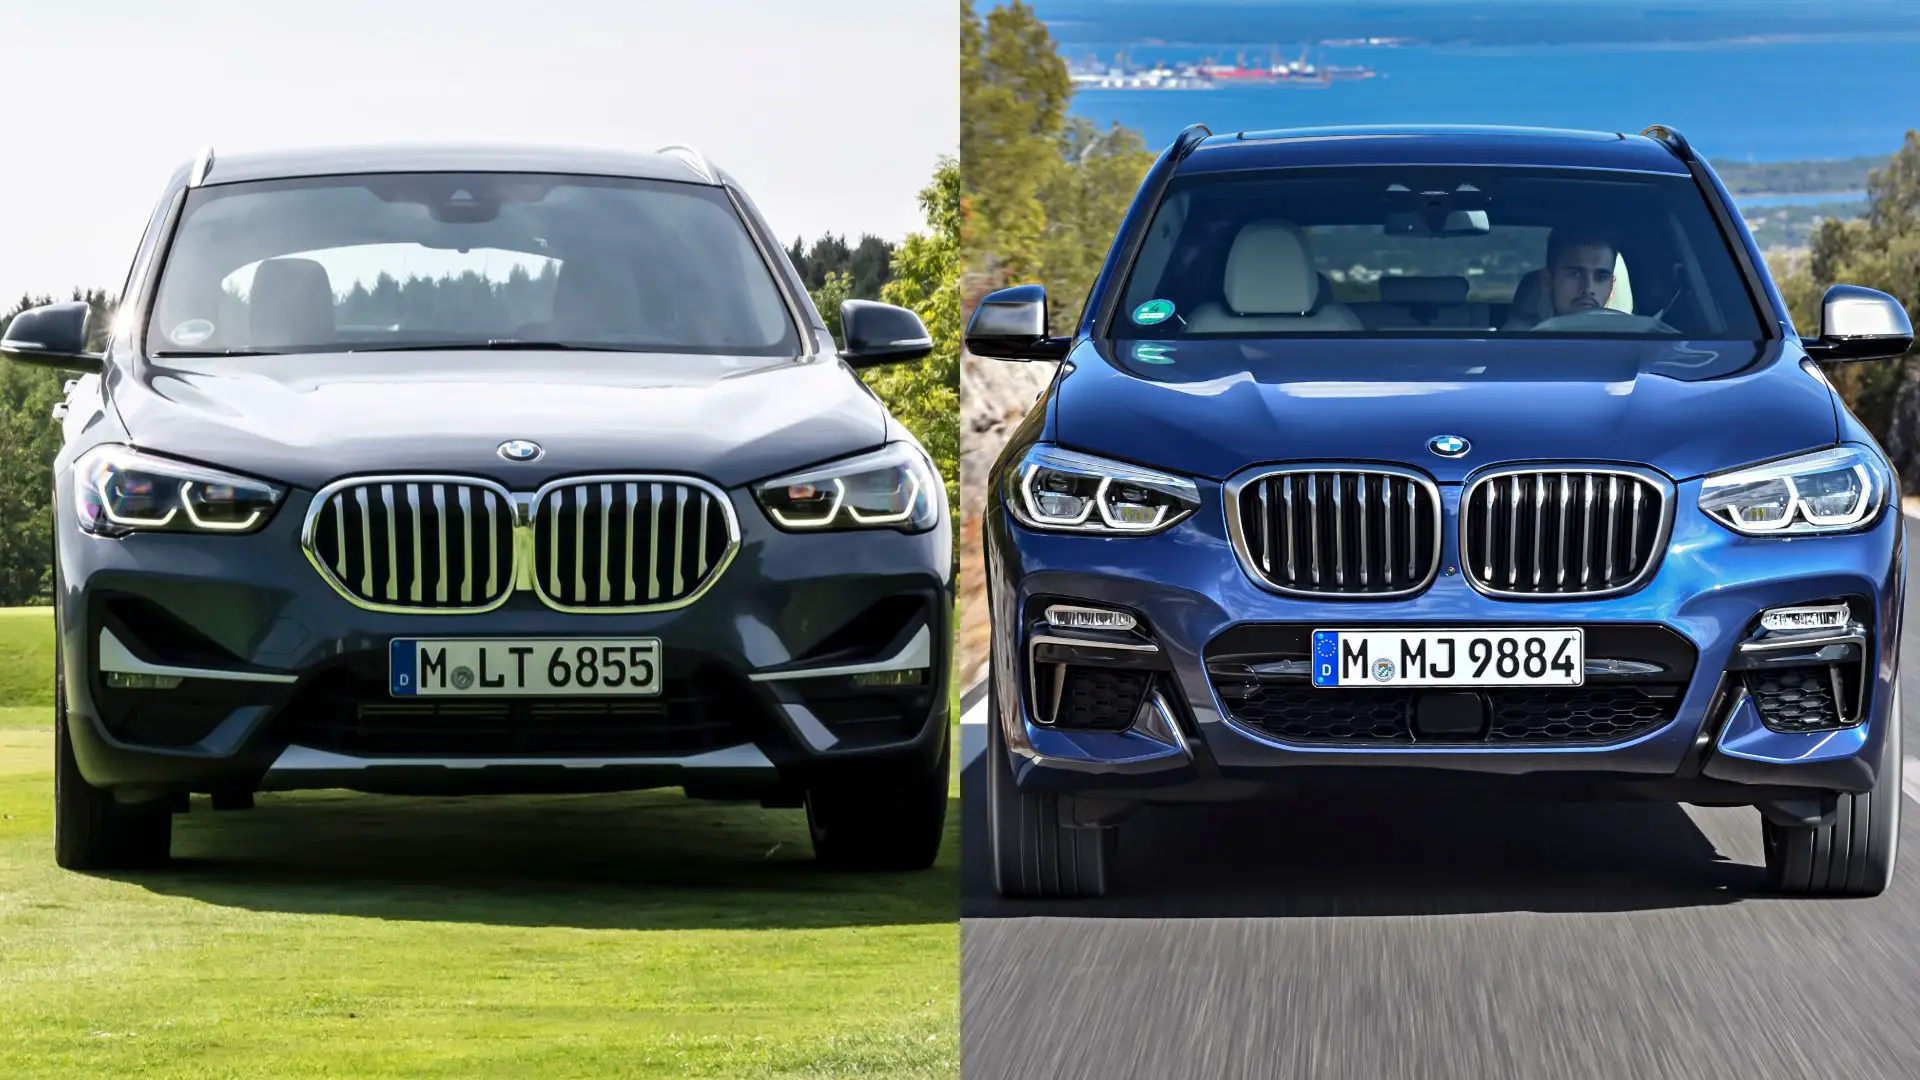 BMW X1 vs X3 comparison